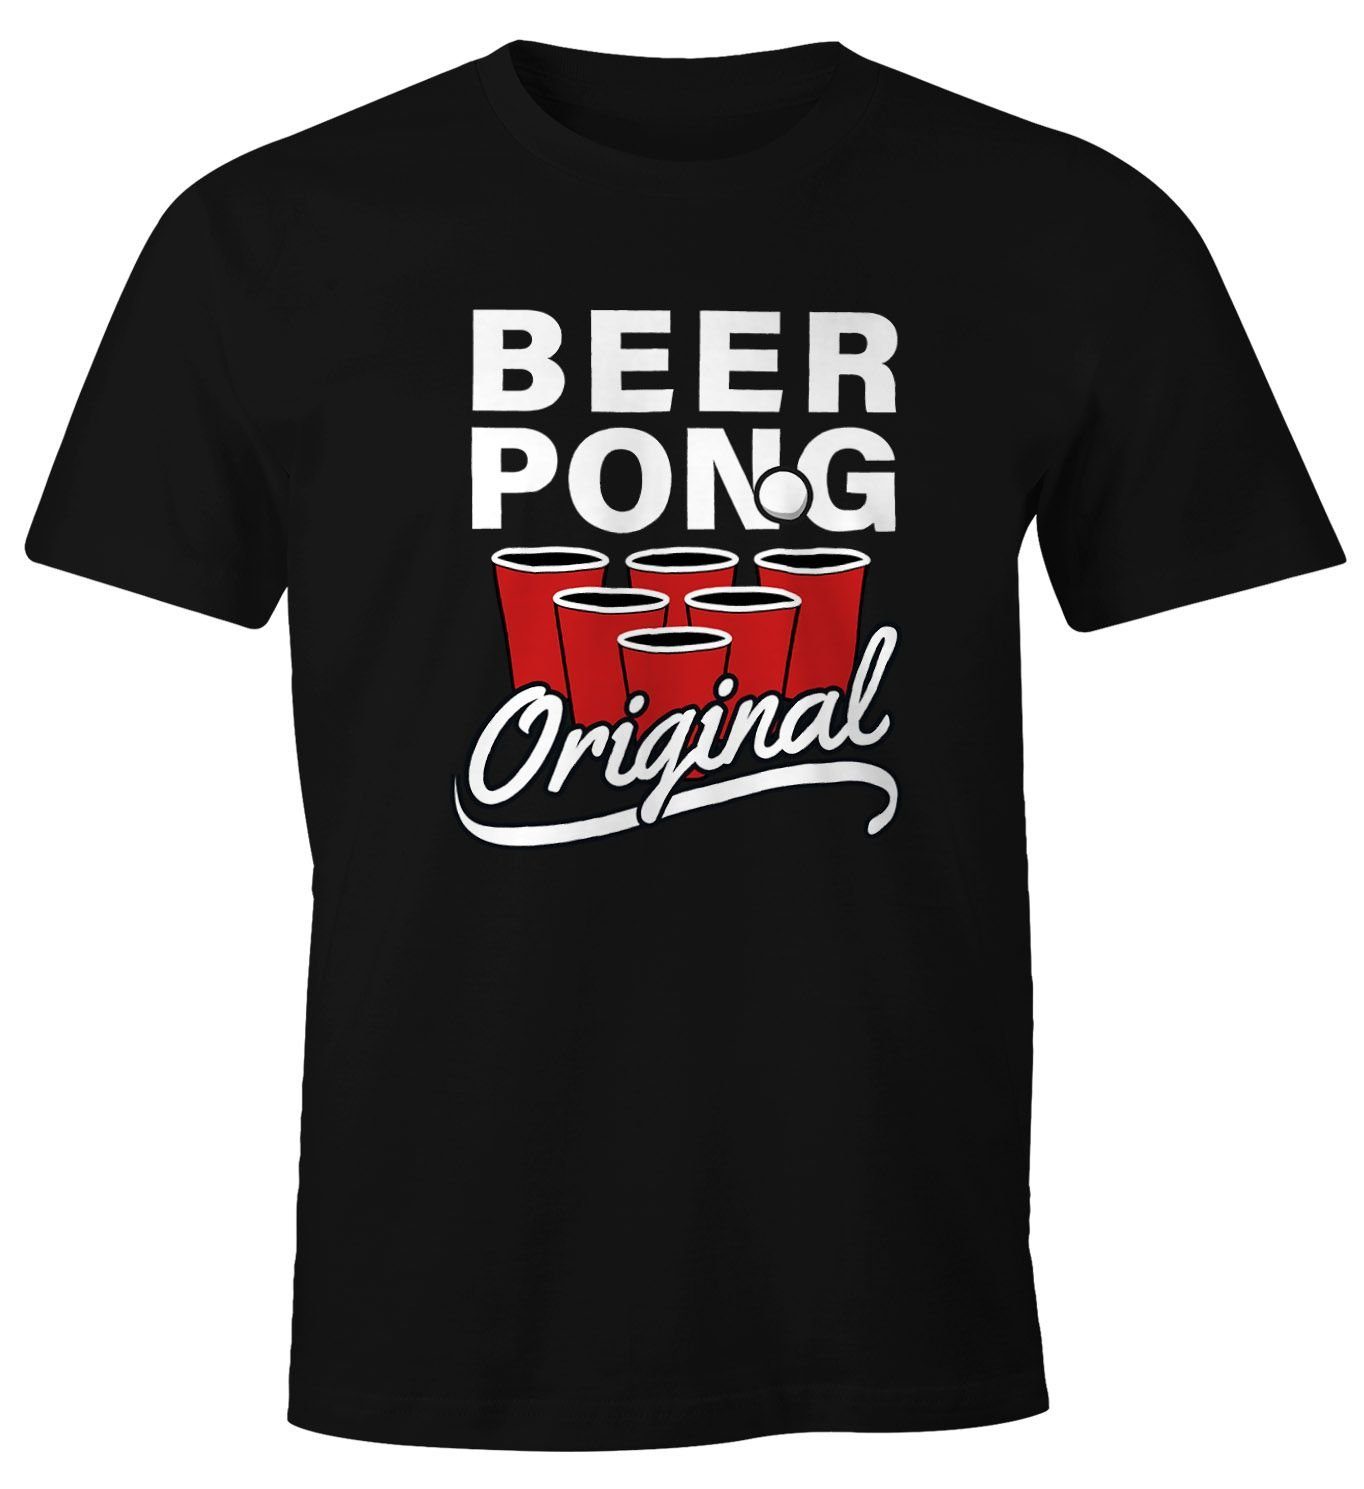 MoonWorks Print-Shirt Herren T-Shirt Beer Pong Original Bier Fun-Shirt Moonworks® mit Print schwarz